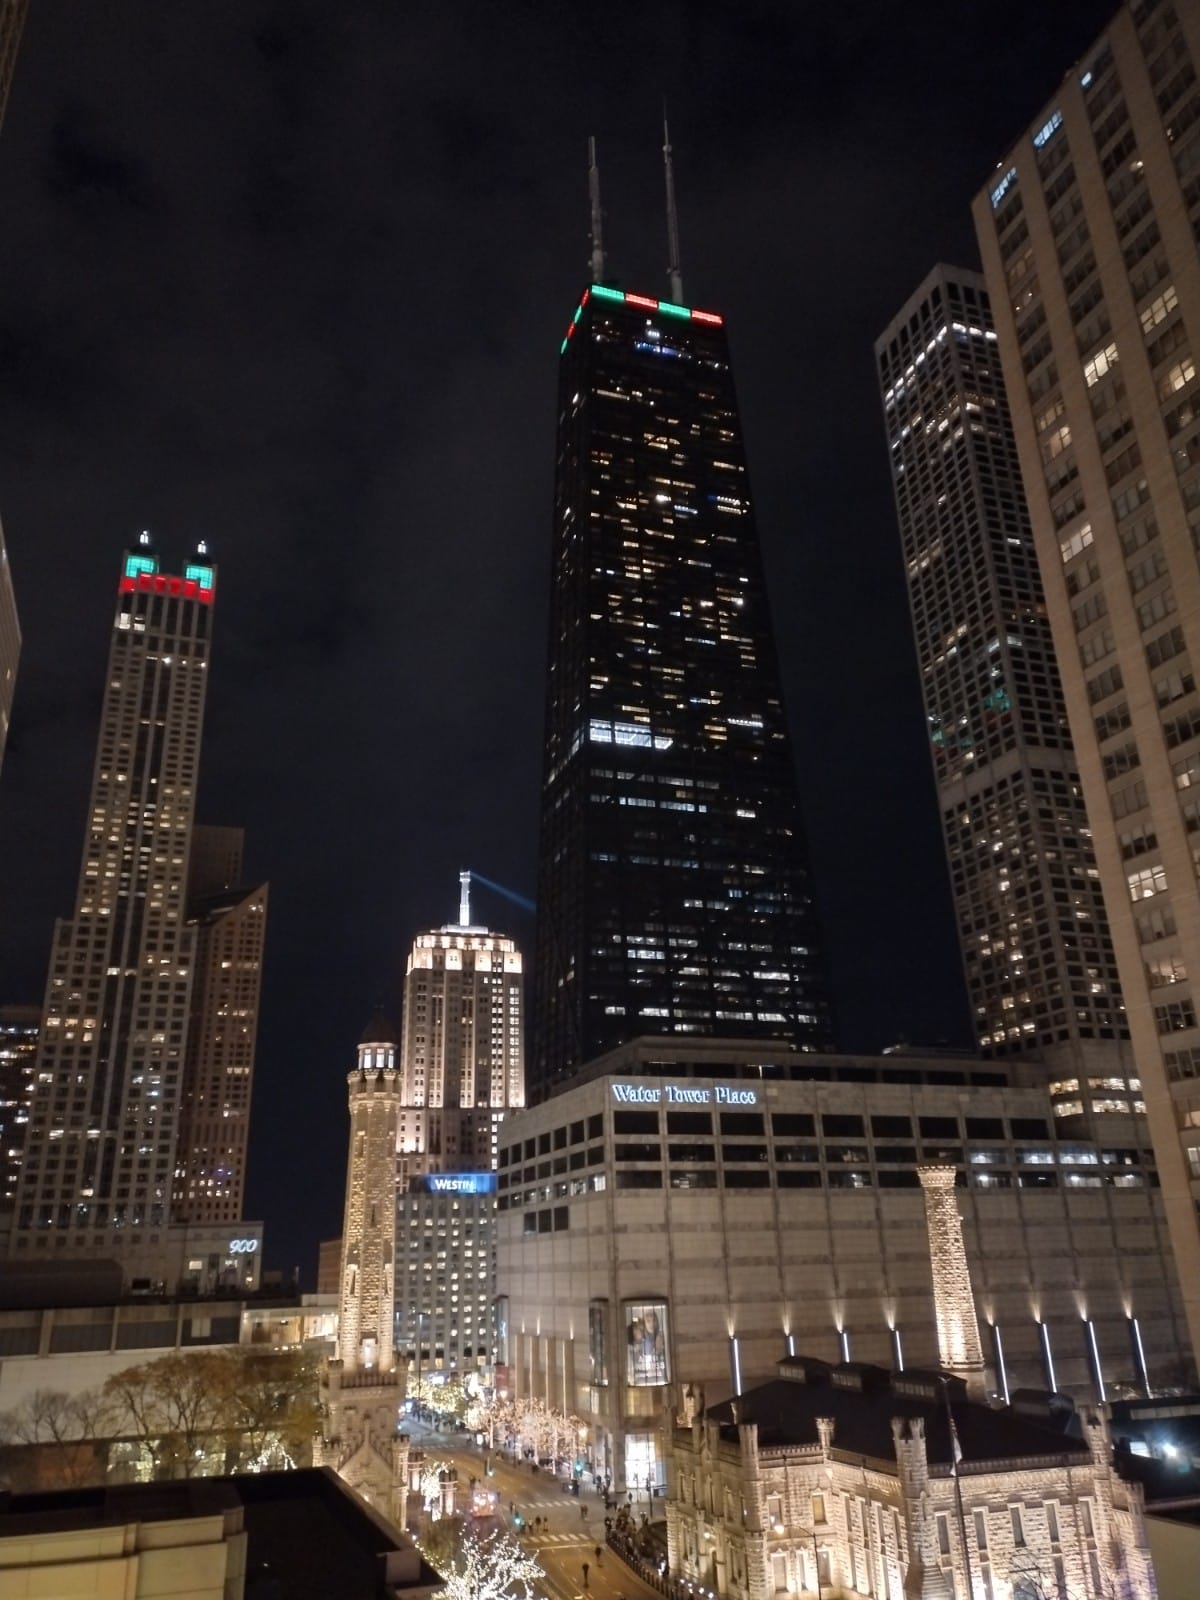 El escenario listo para filmarse de luces navideñas de Chicago es ideal para los cineastas durante la temporada navideña